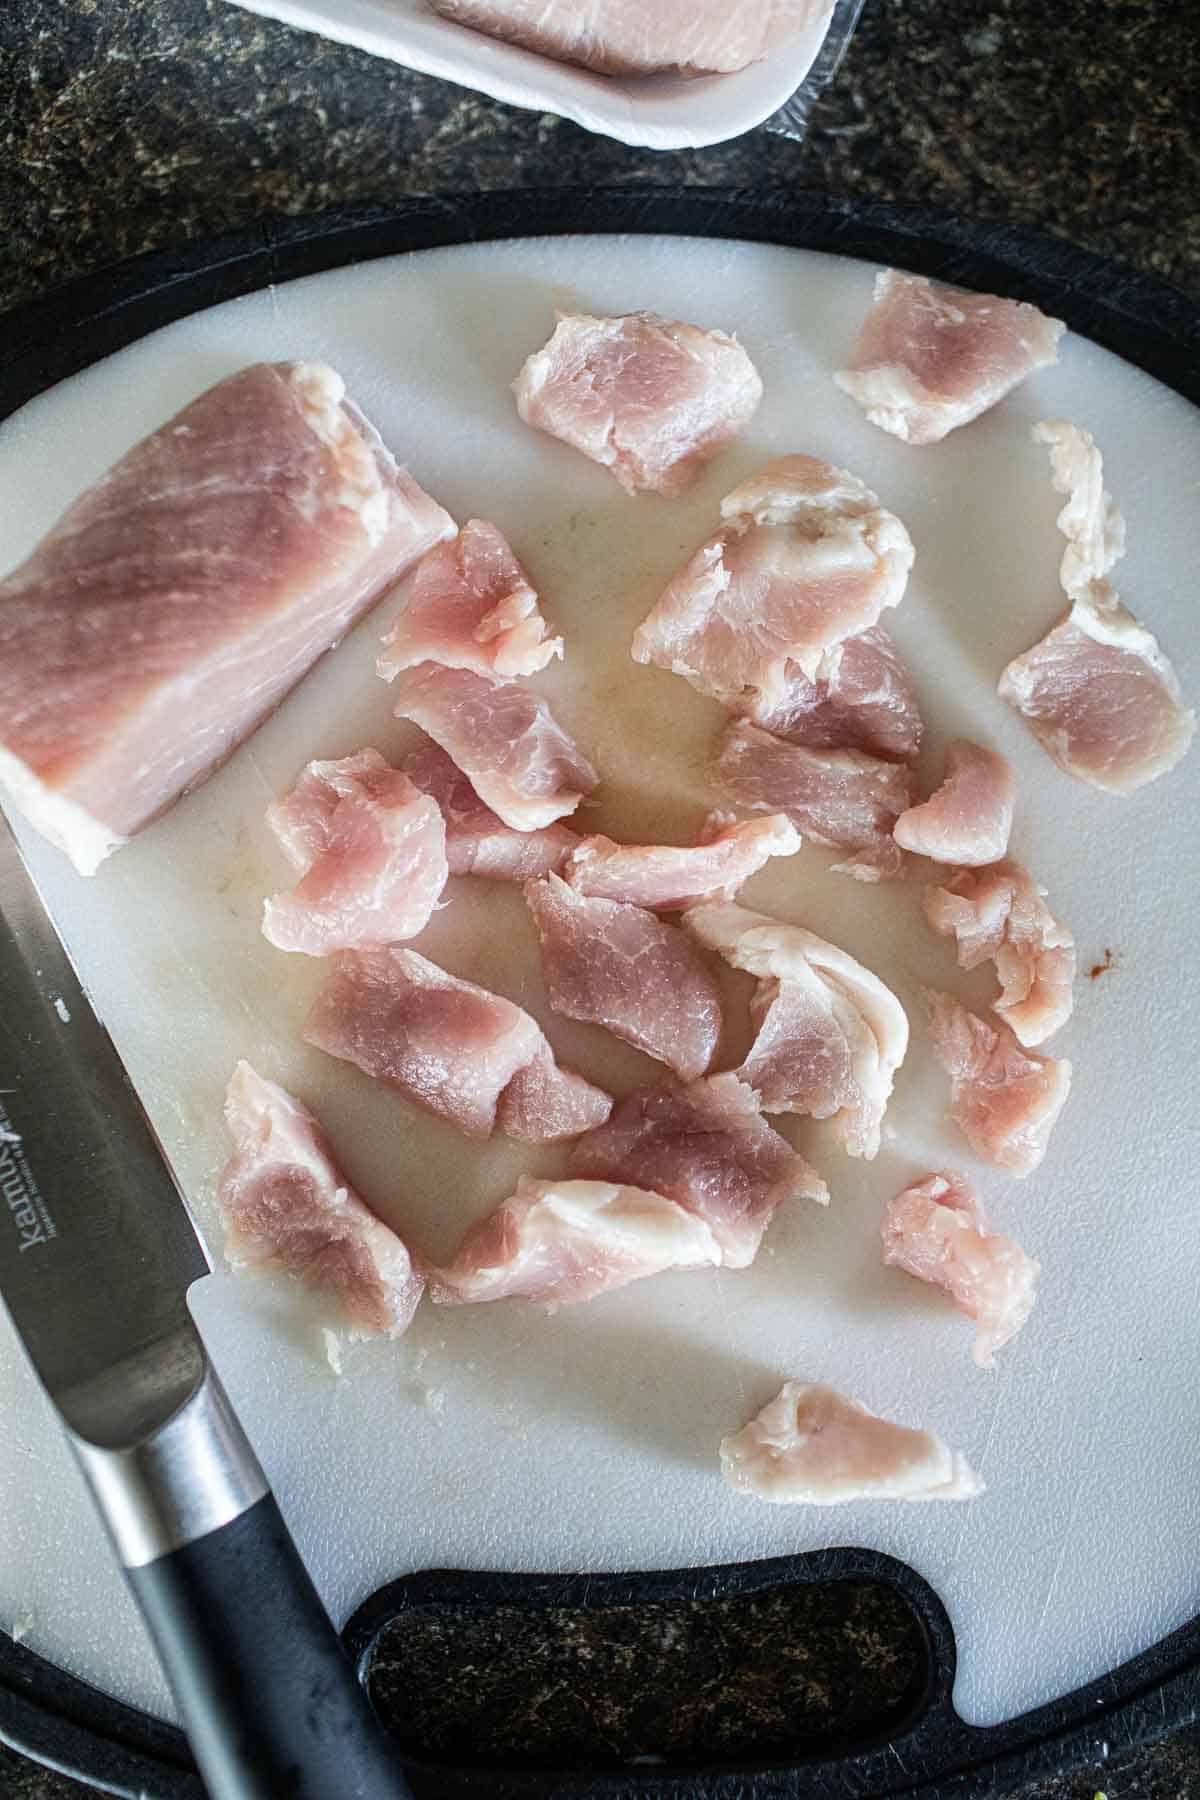 sliced pork on a cutting board.  